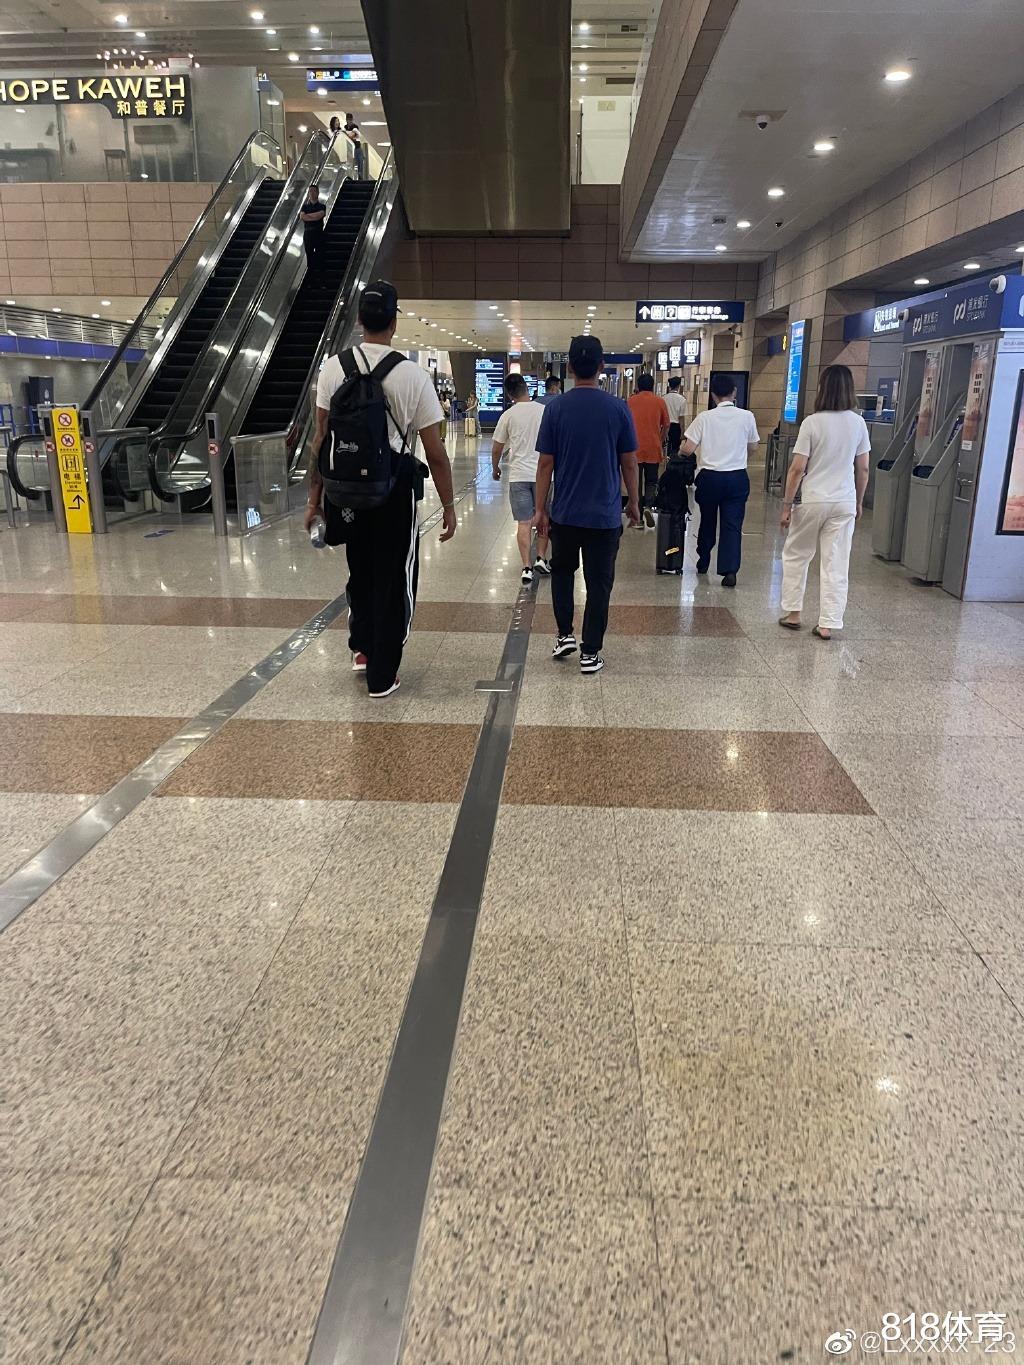 他来了! 李凯尔抵达上海浦东机场, 经纪人婉拒球迷签名要求迅速撤离(7)